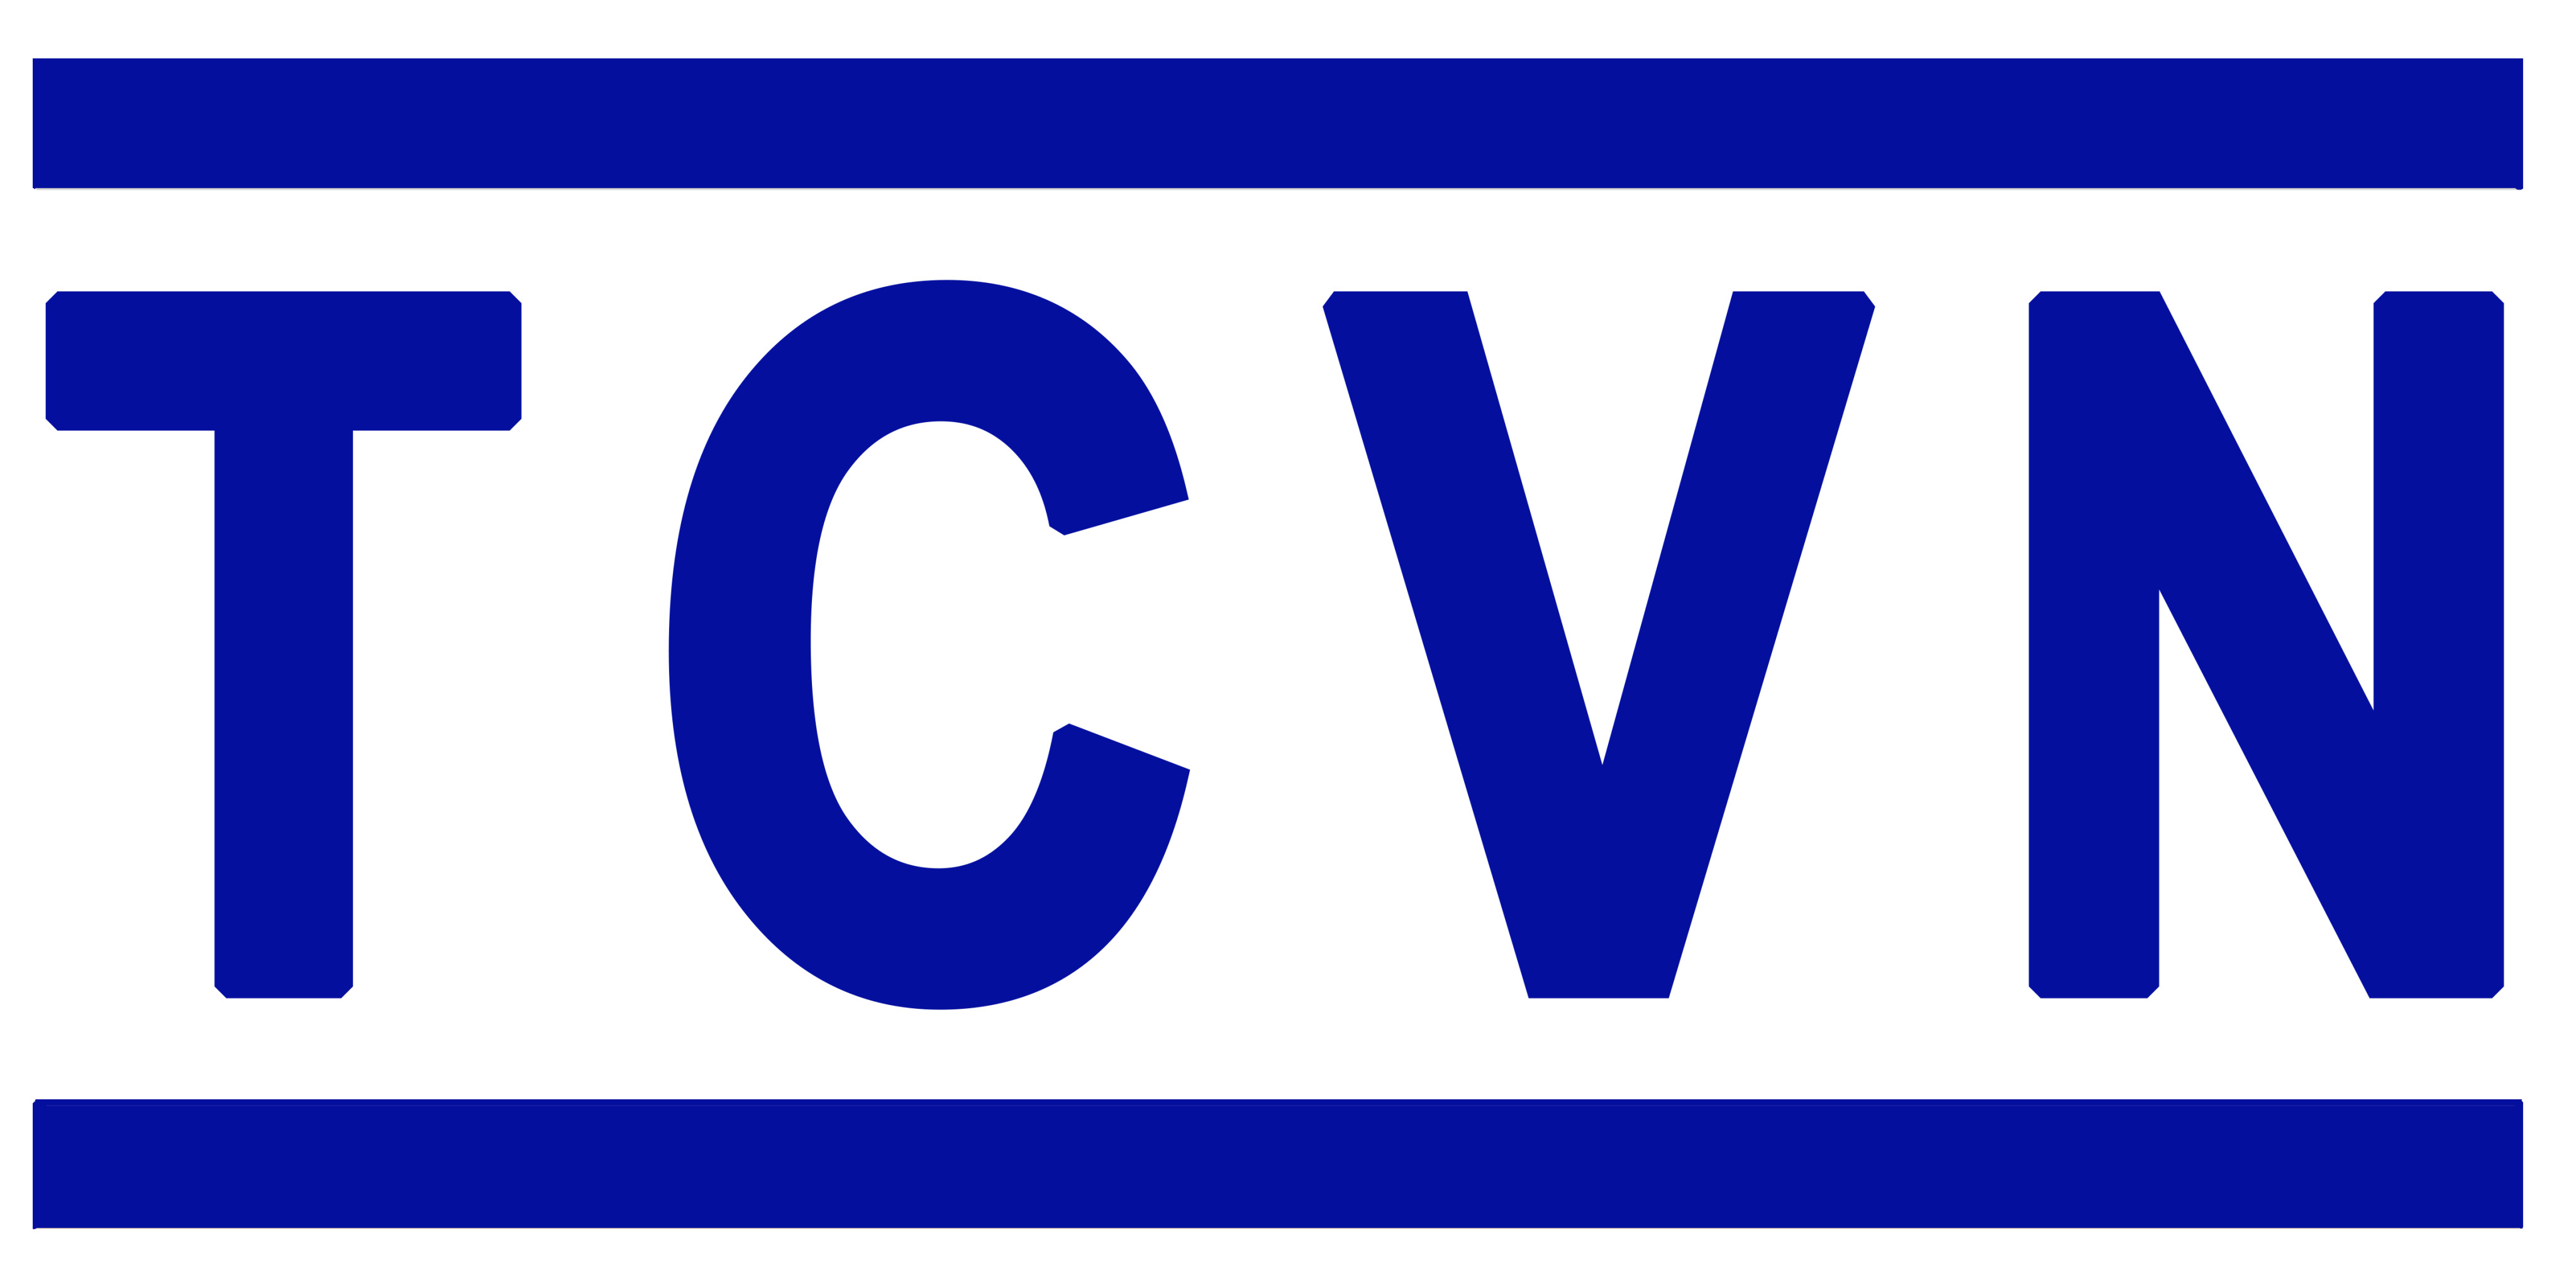 Danh mục tiêu chuẩn Quốc Gia (TCVN)  tháng 10 năm 2021